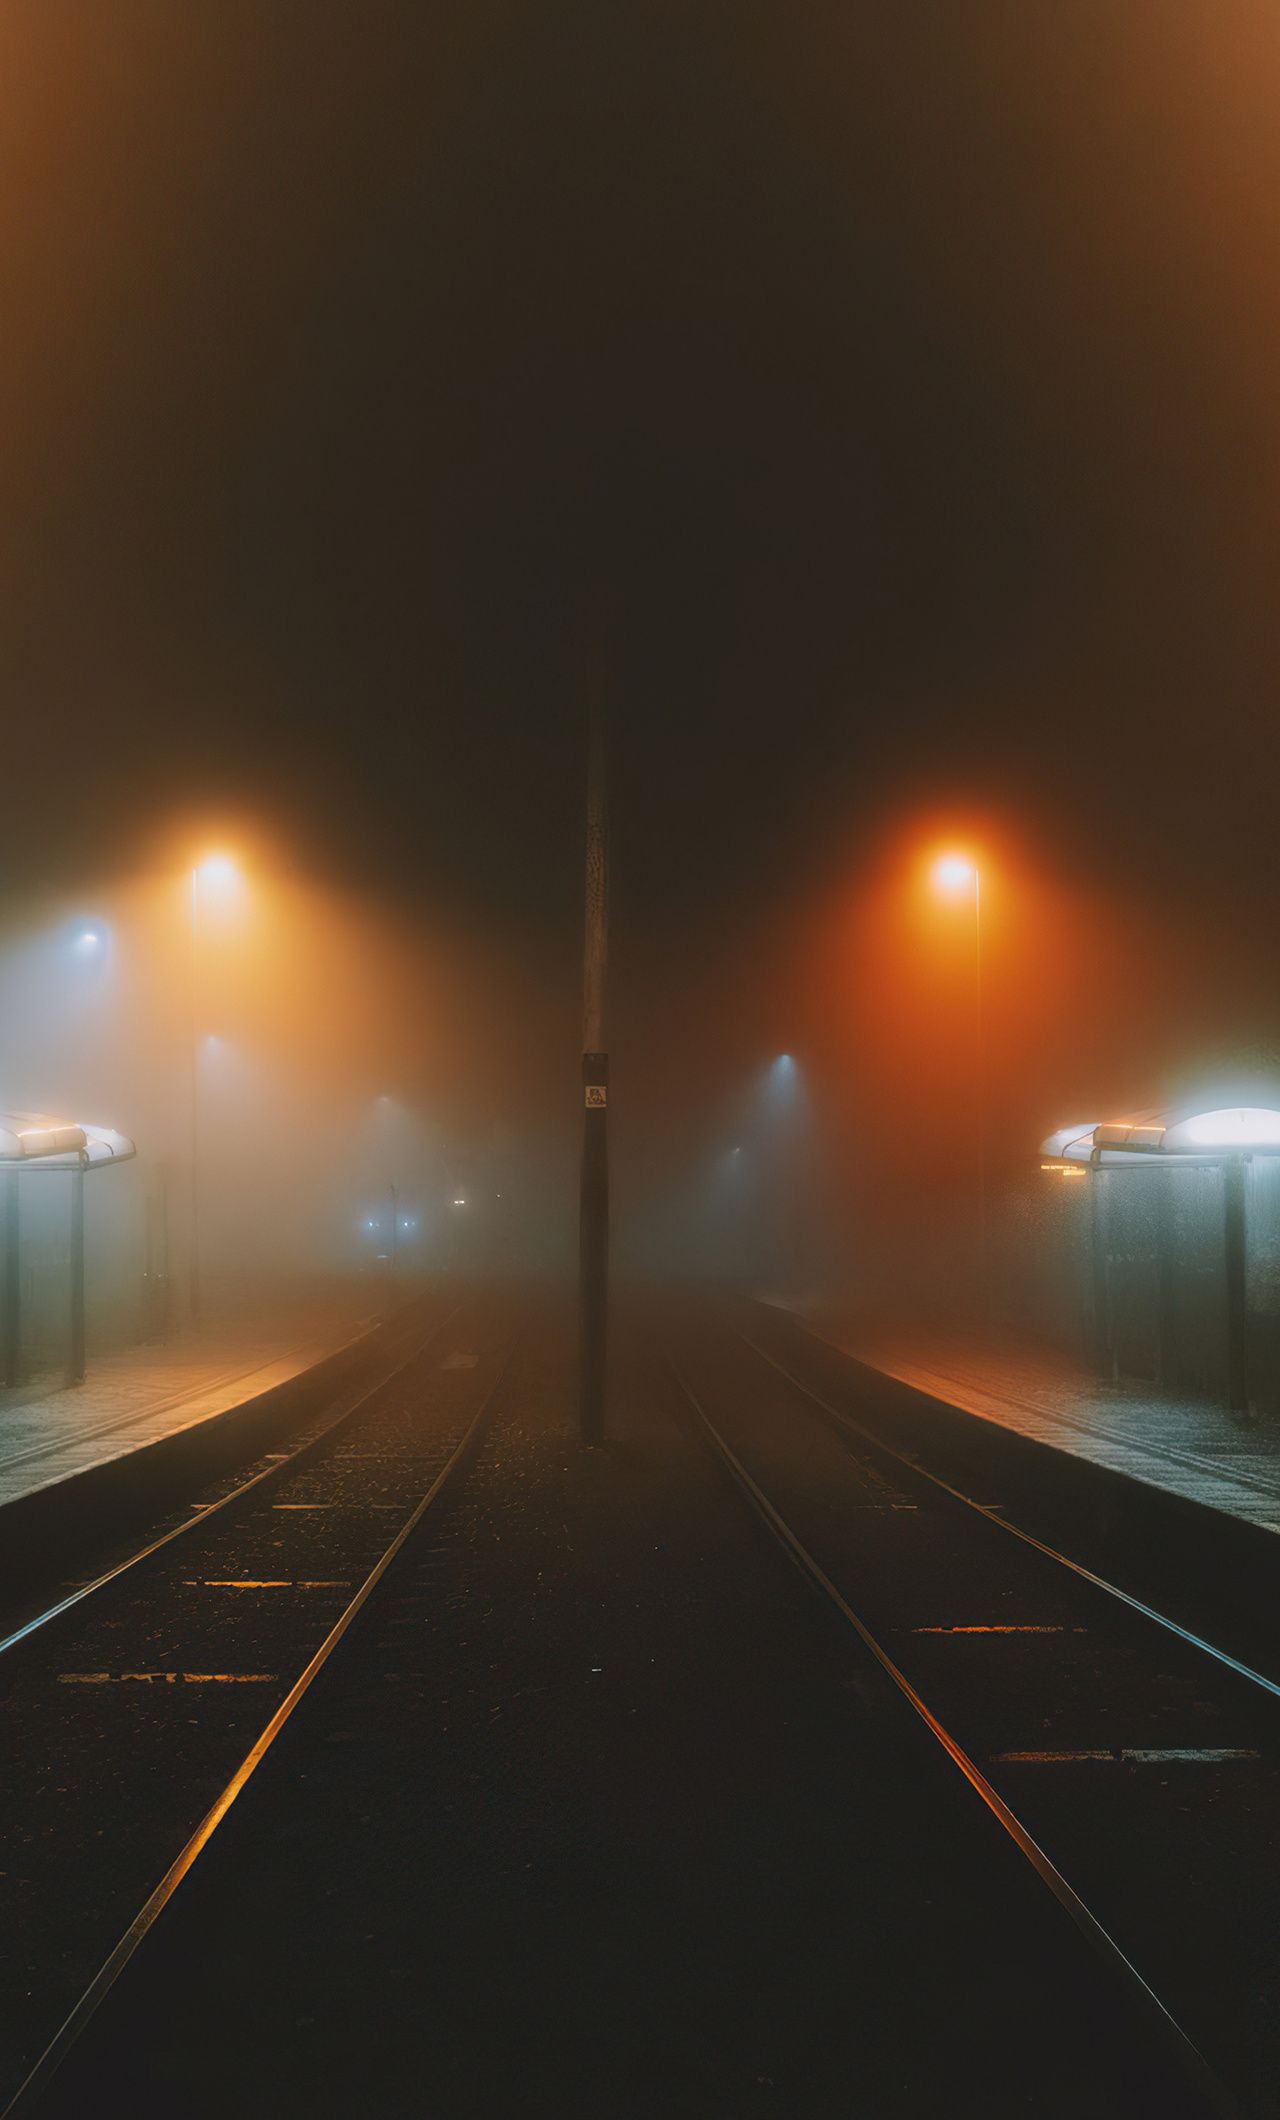 A foggy night at the train station - Fog